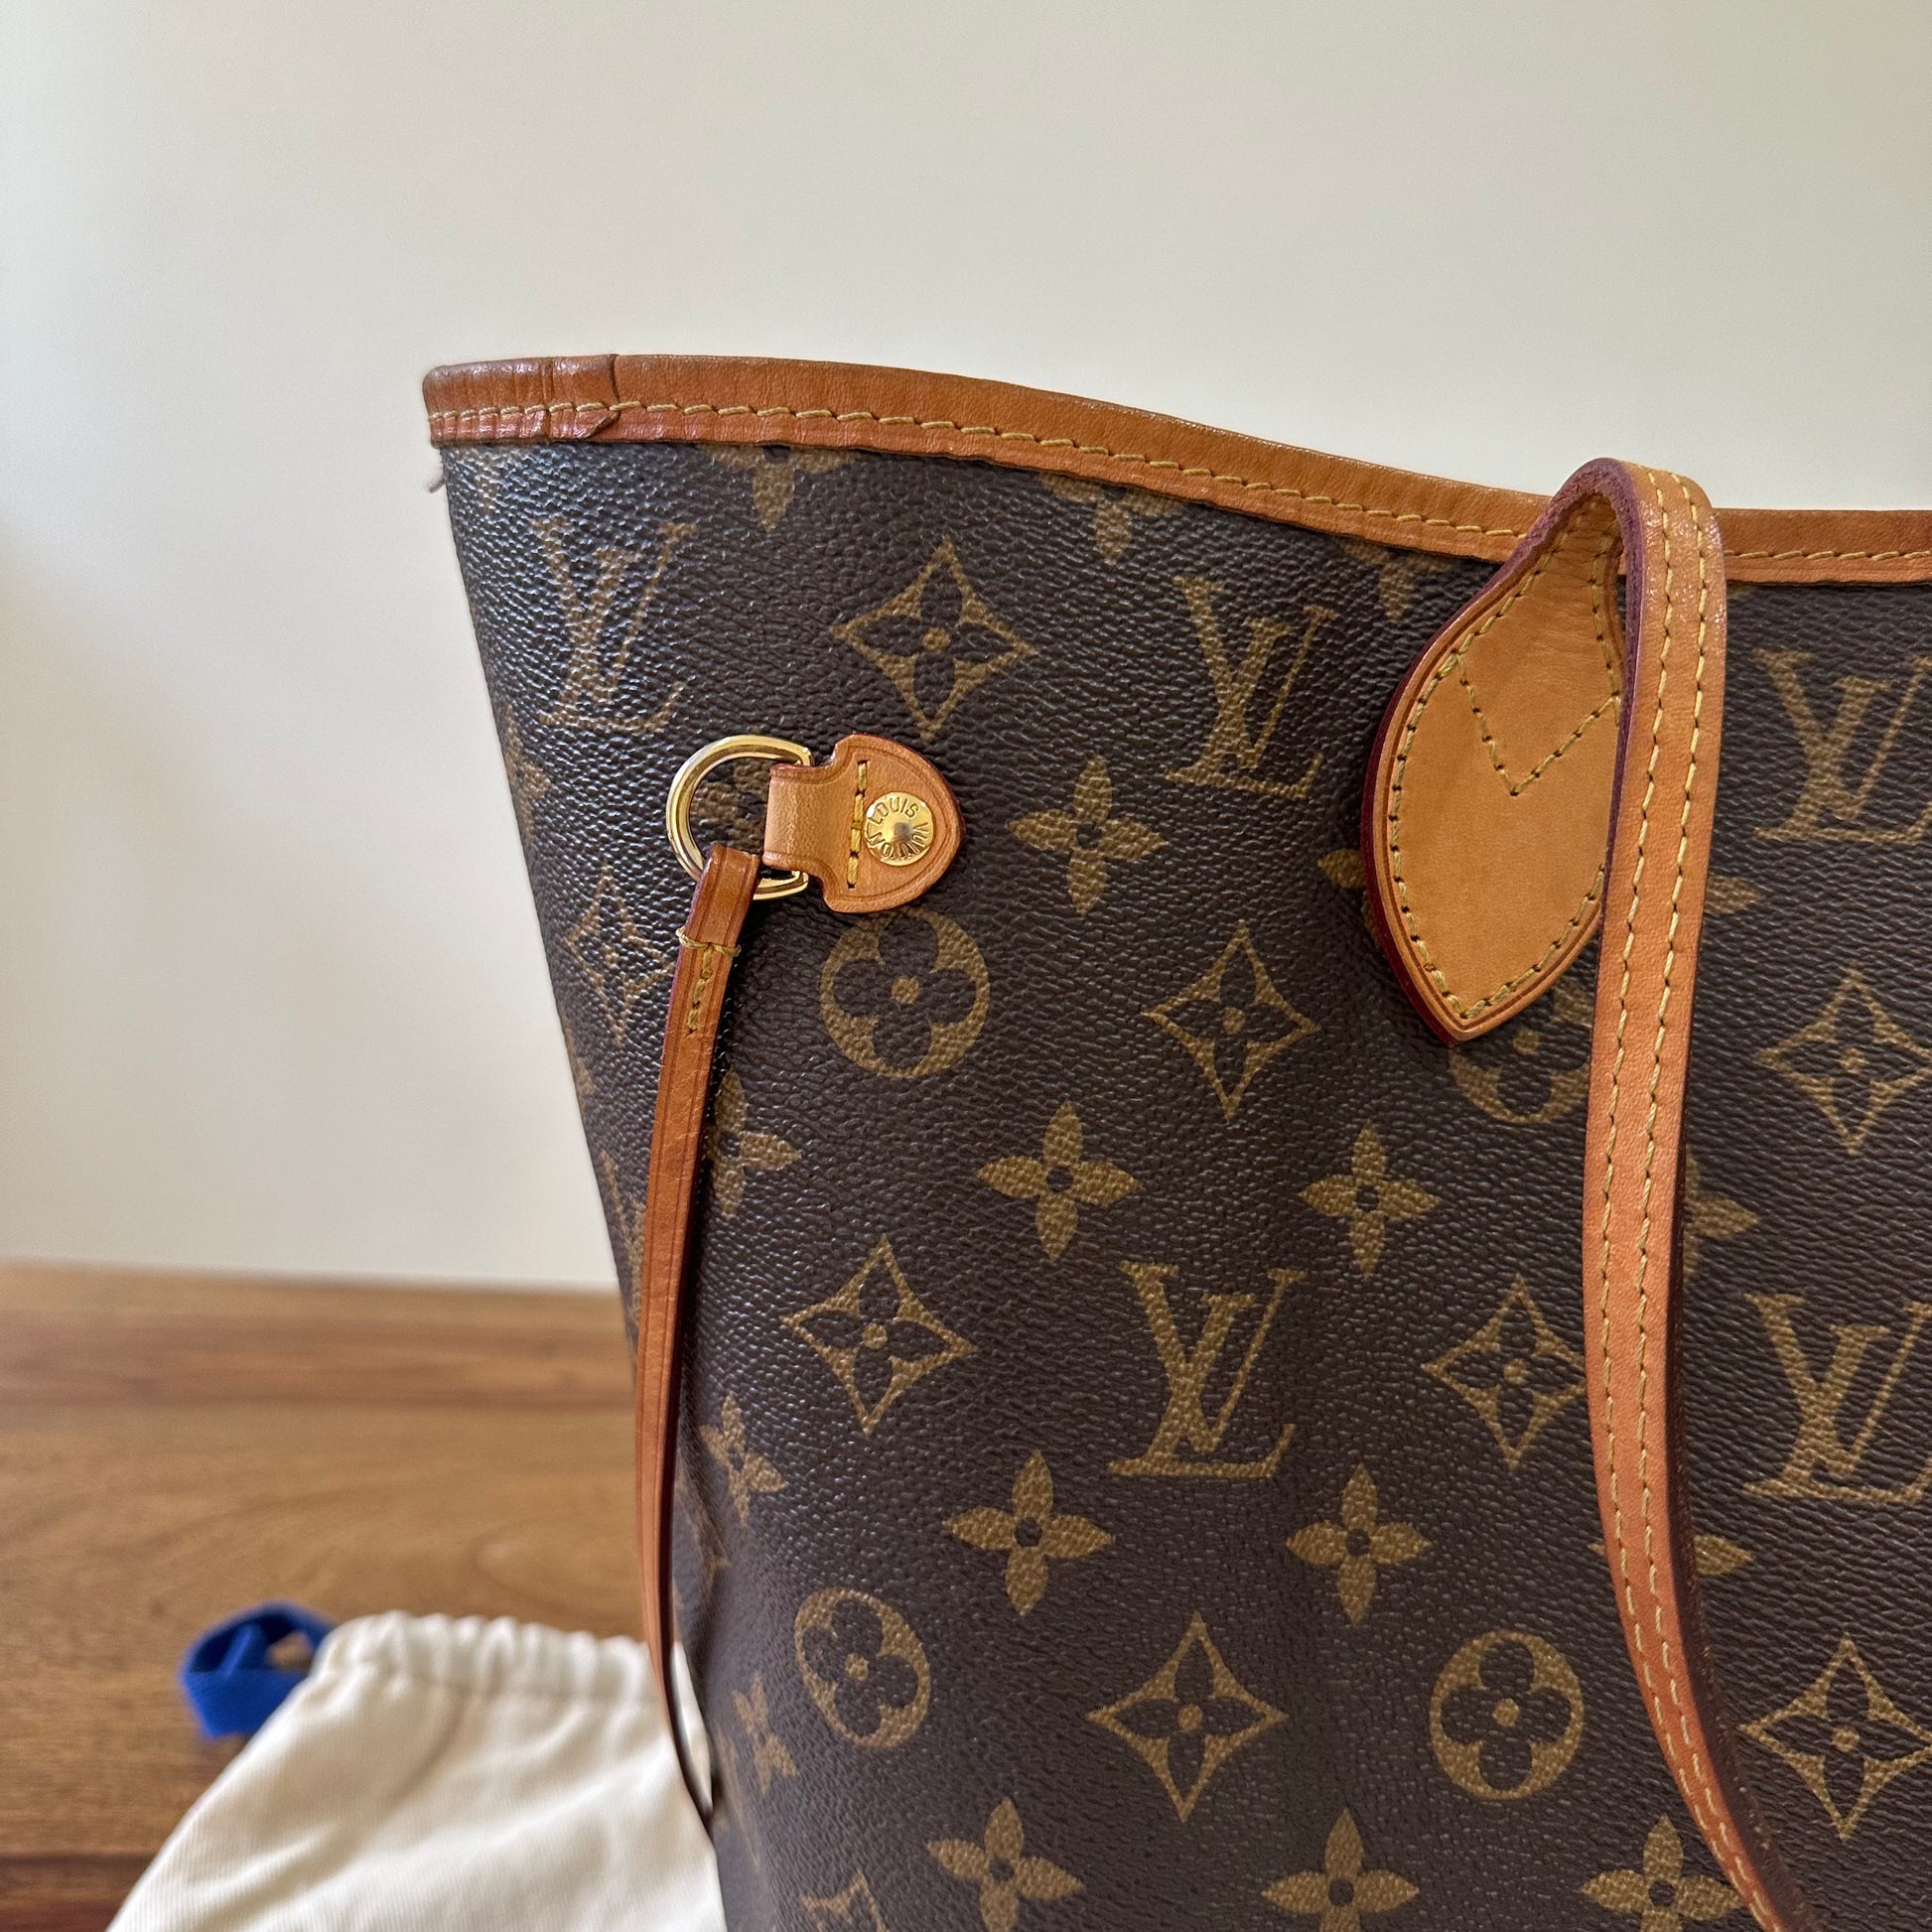 Louis Vuitton Neverfull Handbag 